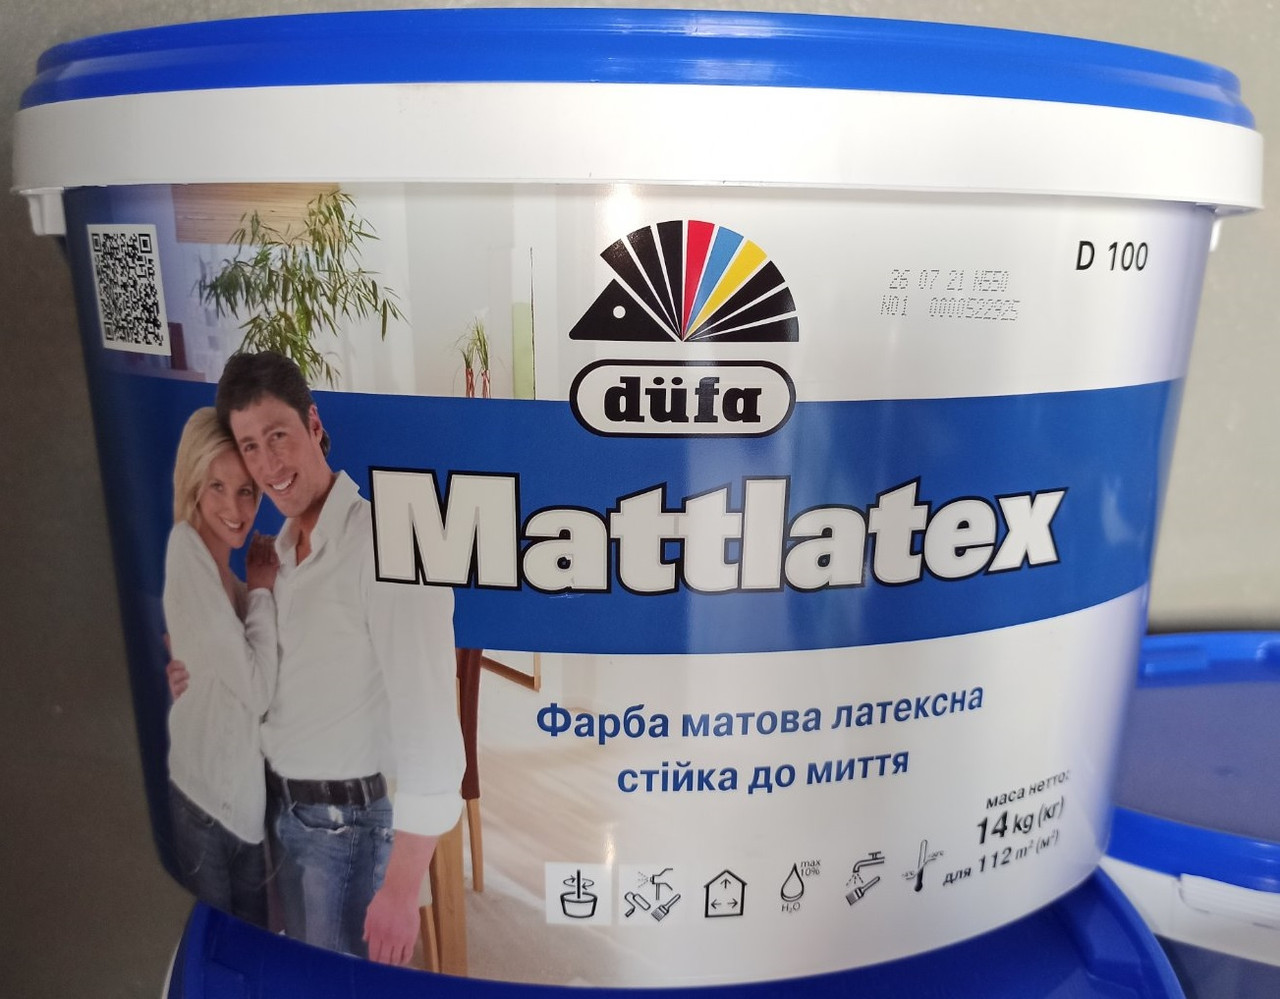 Фарба 14 кг Дюфа Матлатекс Dufa Mattlatex D100